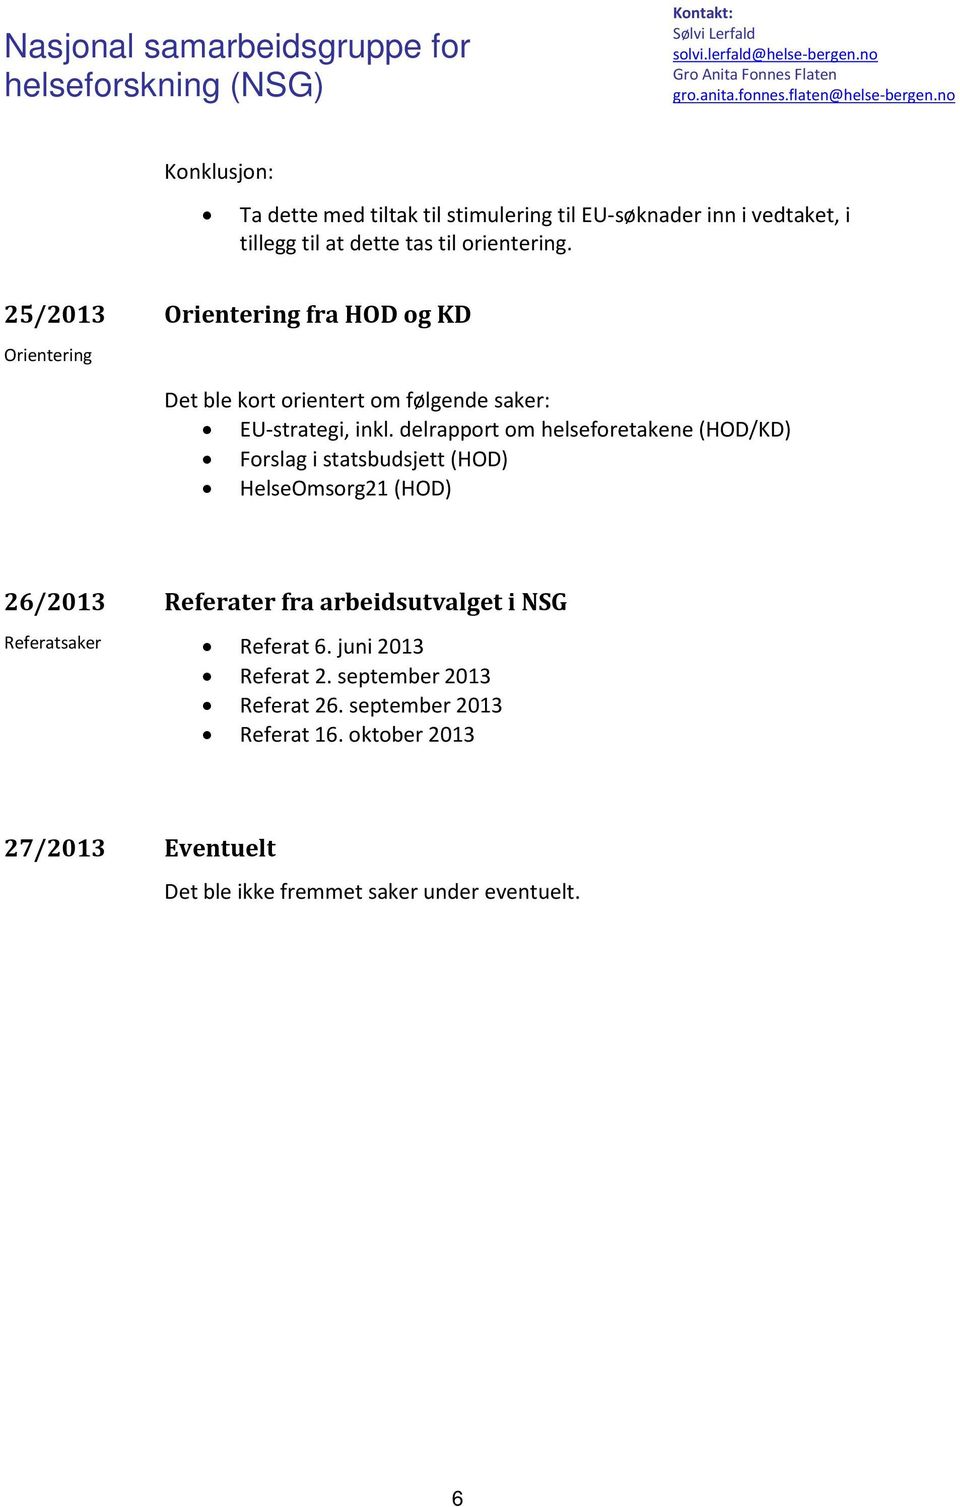 delrapport om helseforetakene (HOD/KD) Forslag i statsbudsjett (HOD) HelseOmsorg21 (HOD) 26/2013 Referater fra